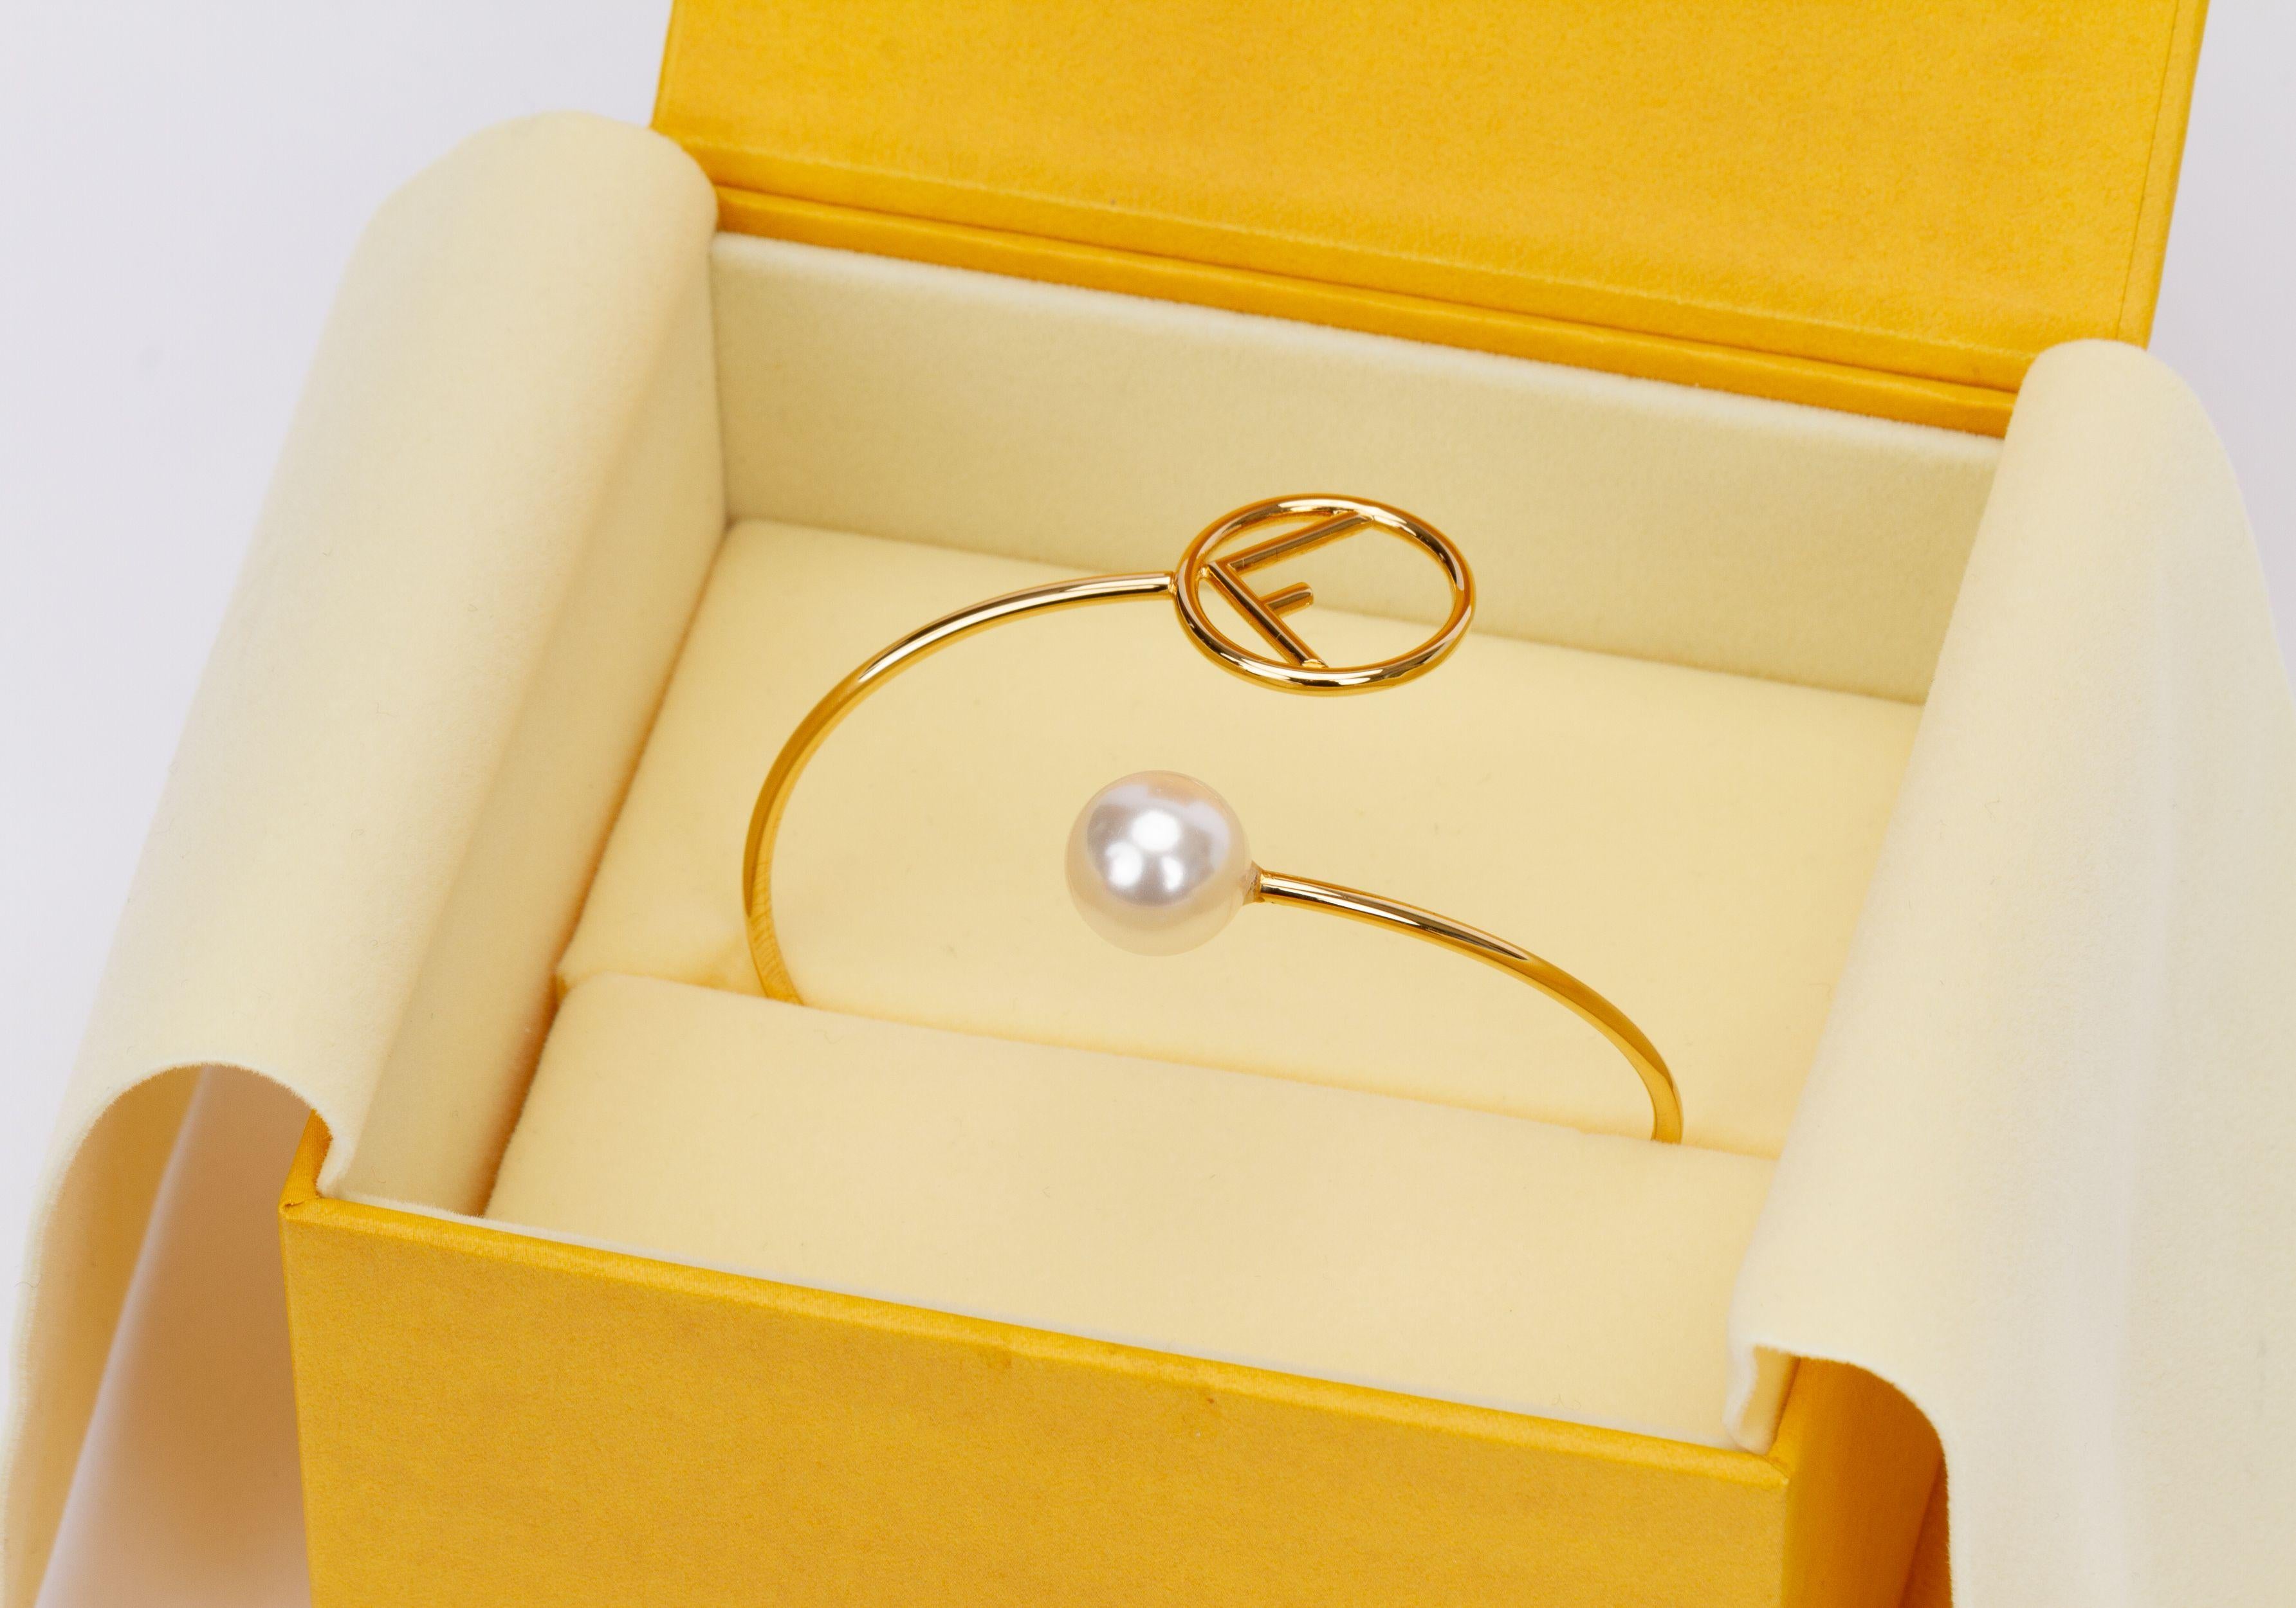 Bracelet Fendi en or. D'un côté, le bracelet se termine par une perle et de l'autre côté, le logo F singulier. Il est neuf et livré avec sa boîte d'origine.